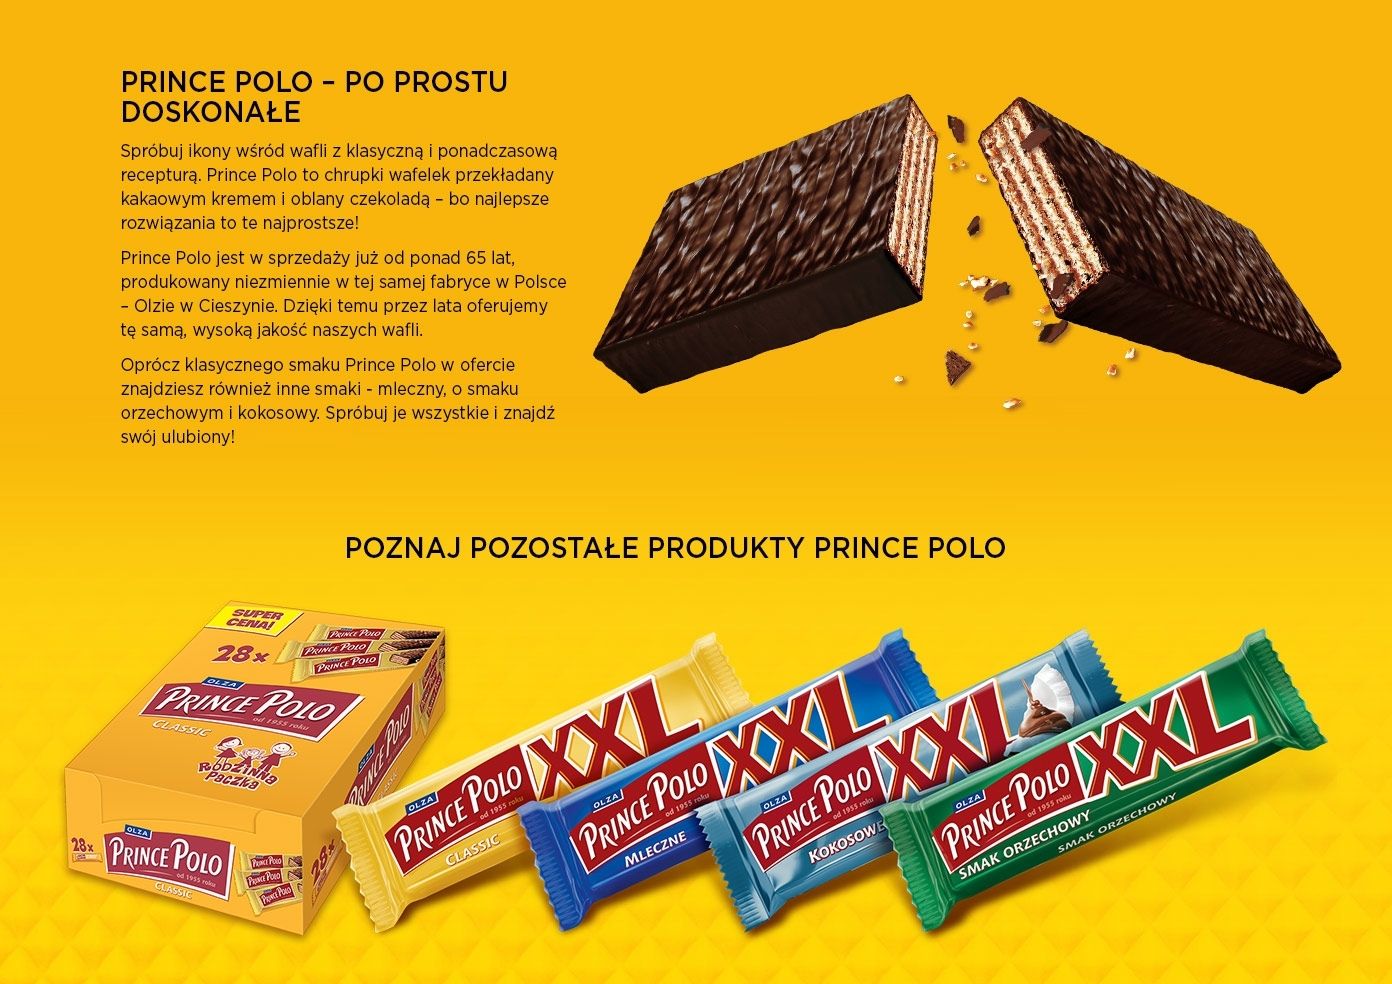 Prince Polo XXL Classic wafelek kremem kakaowym oblany czekoladą 50 g - Zakupy online dostawą do domu - Carrefour.pl